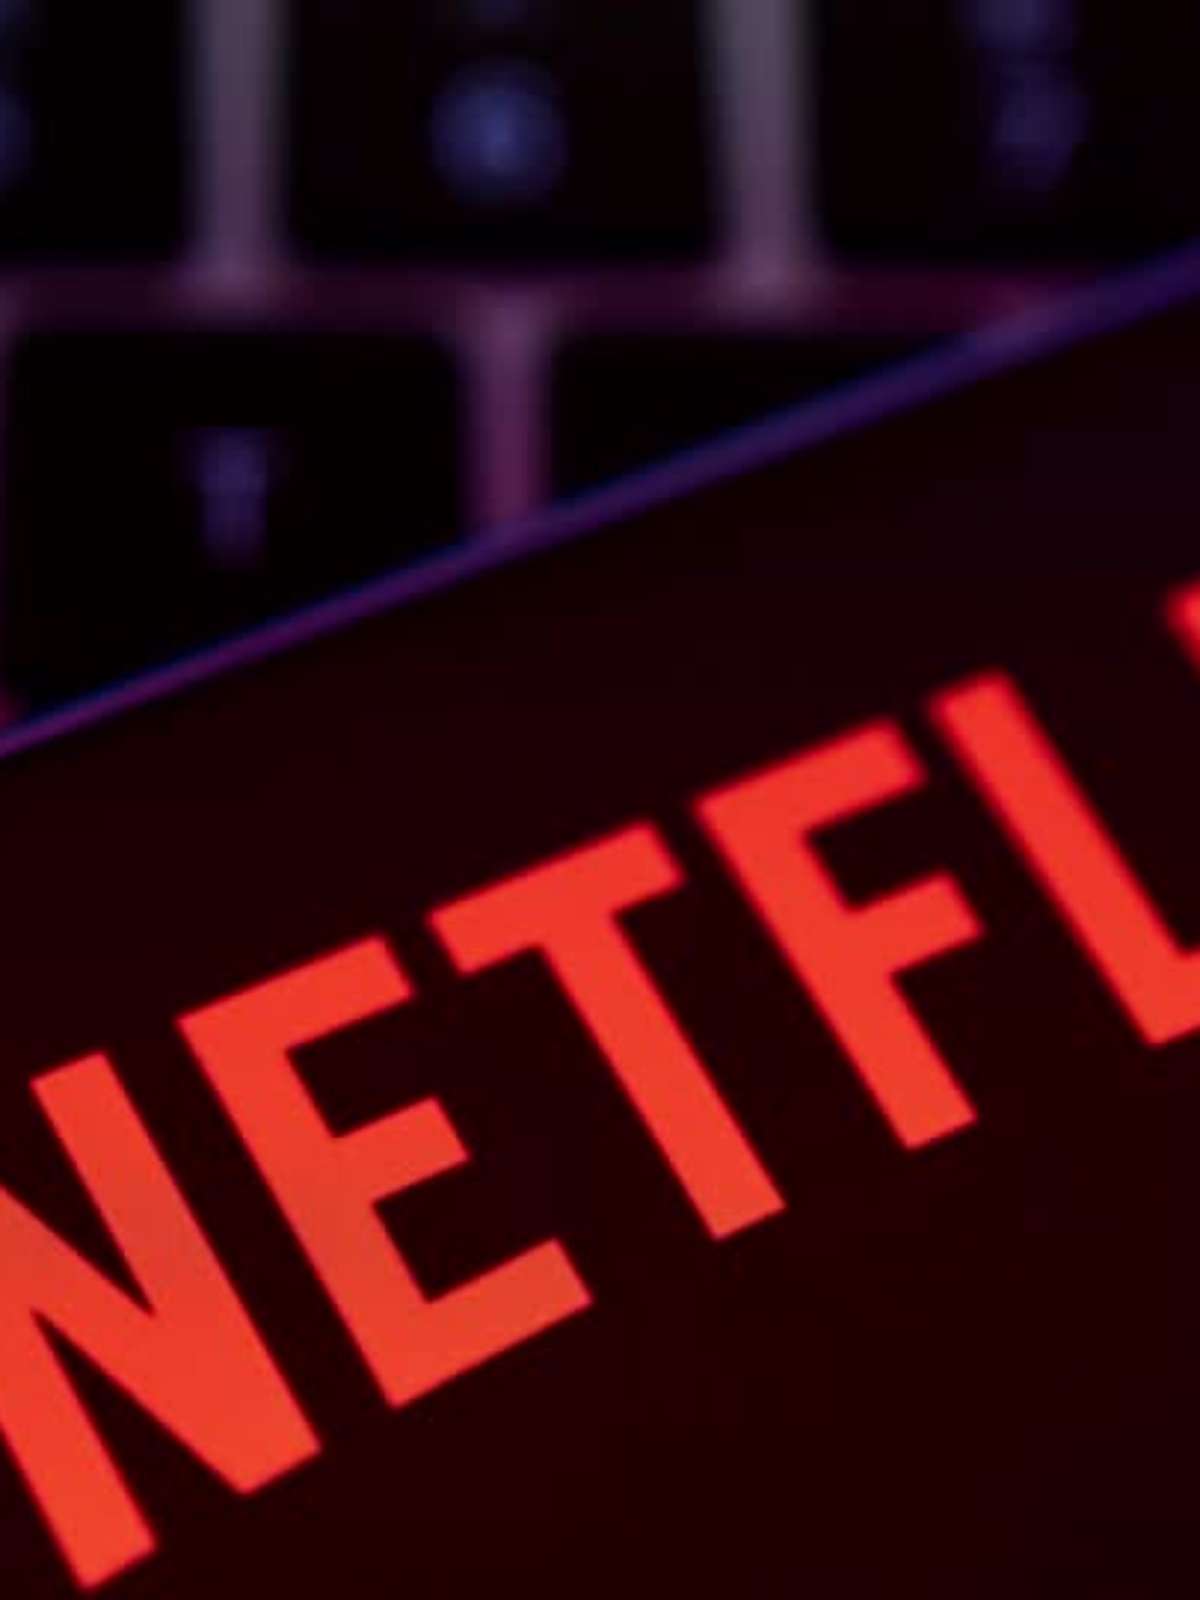 Netflix planeja taxa extra para usuários que compartilham suas